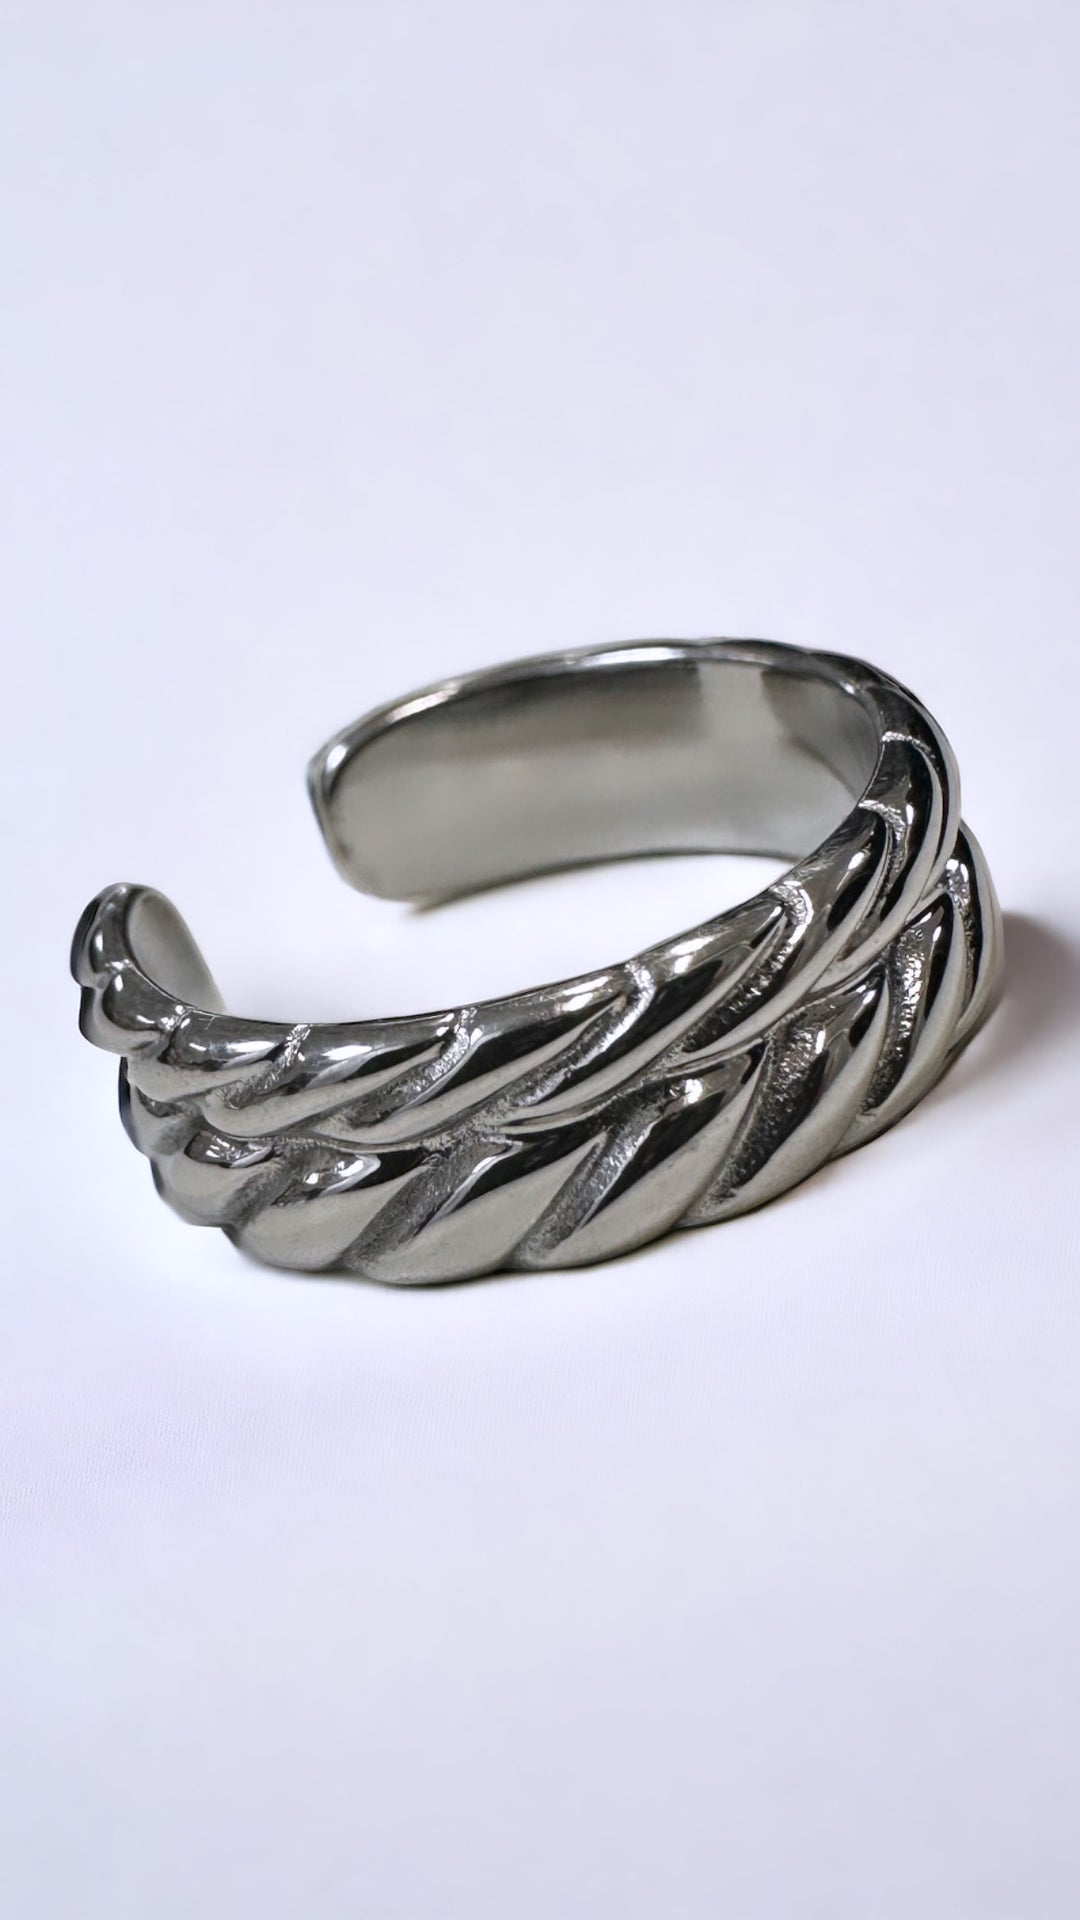 schlichter Ring mit schlichtem Muster / silber Art. 5489